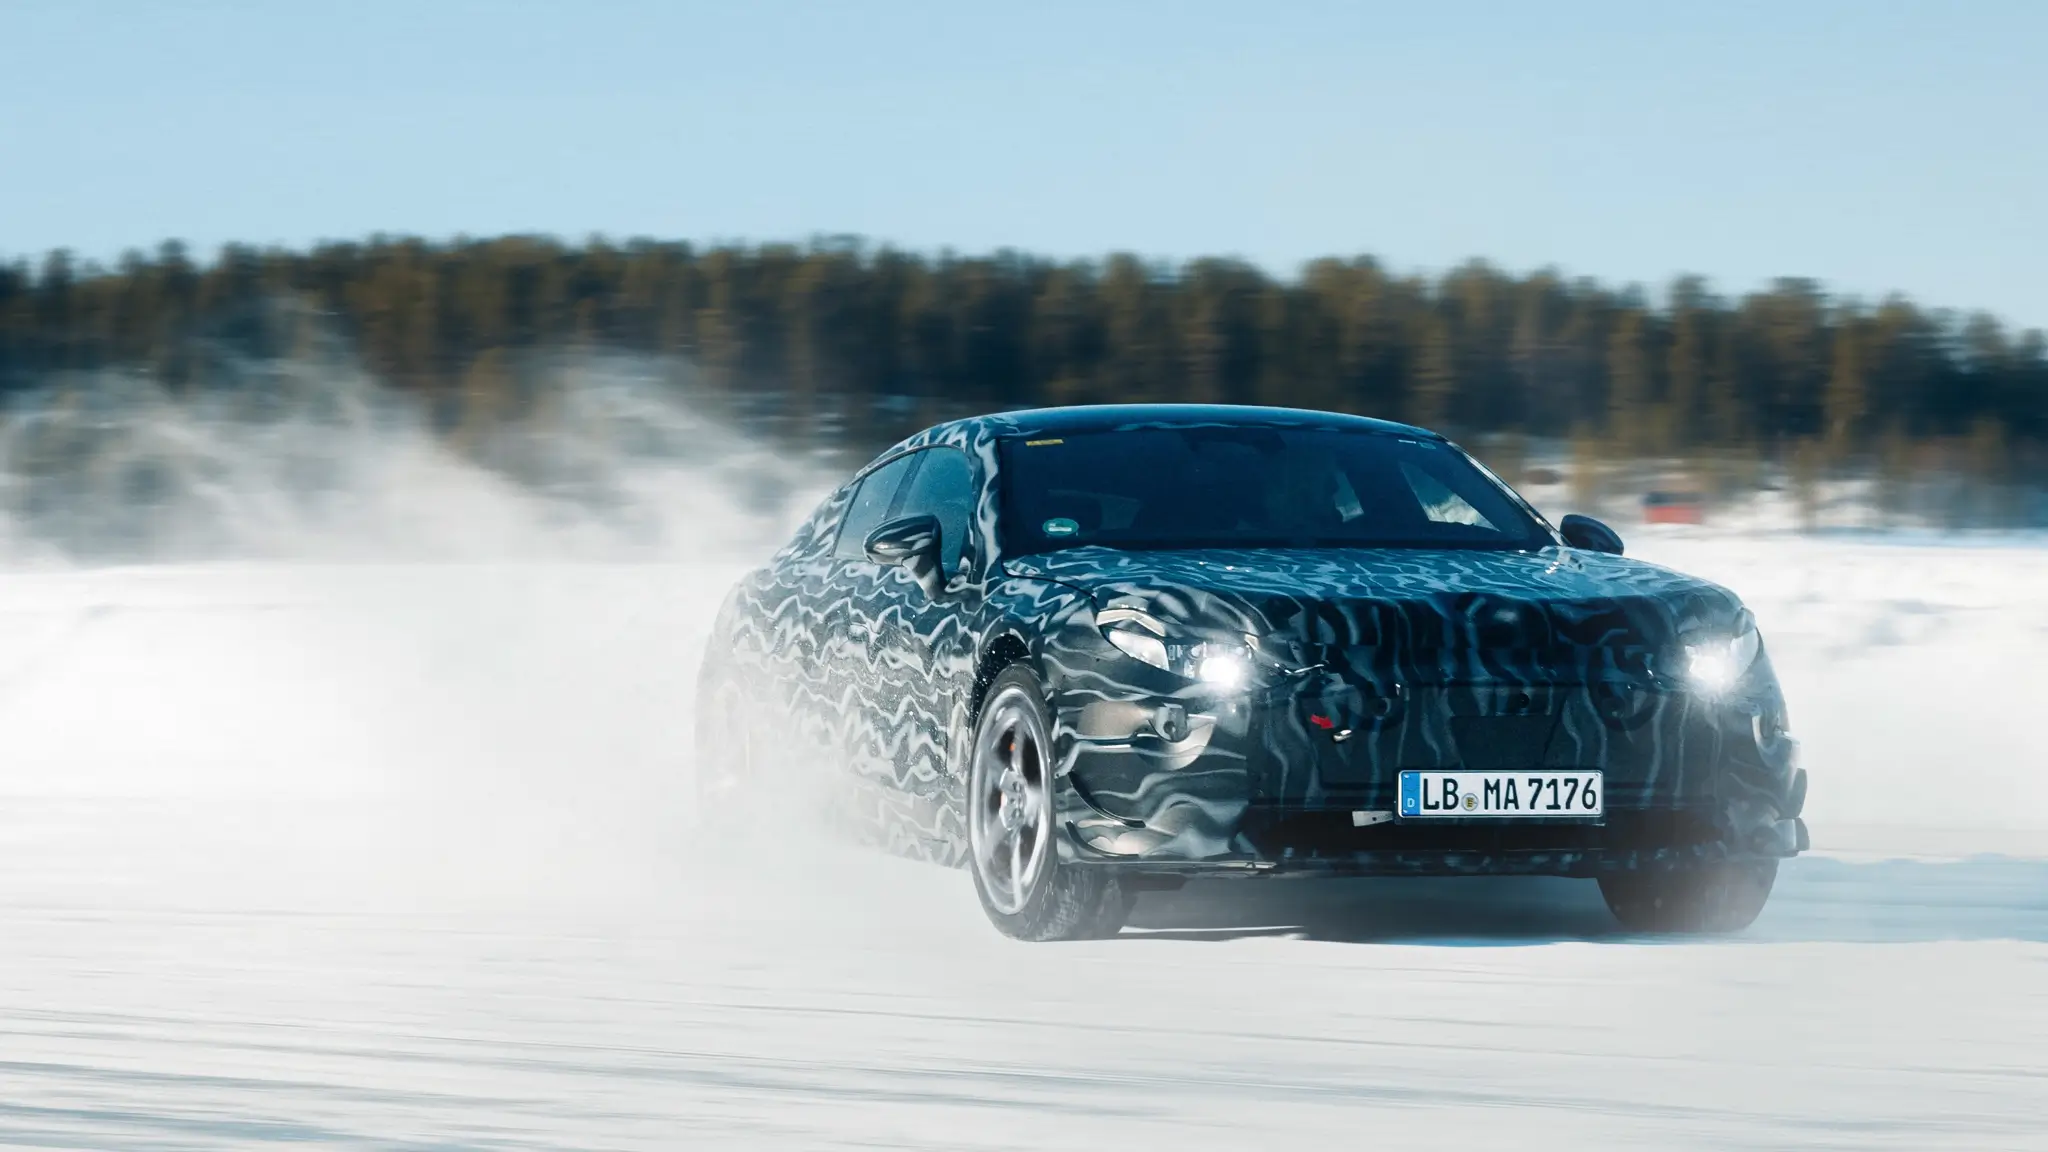 foto-espia do Mercedes-AMG berlina elétrica em testes na neve, frente